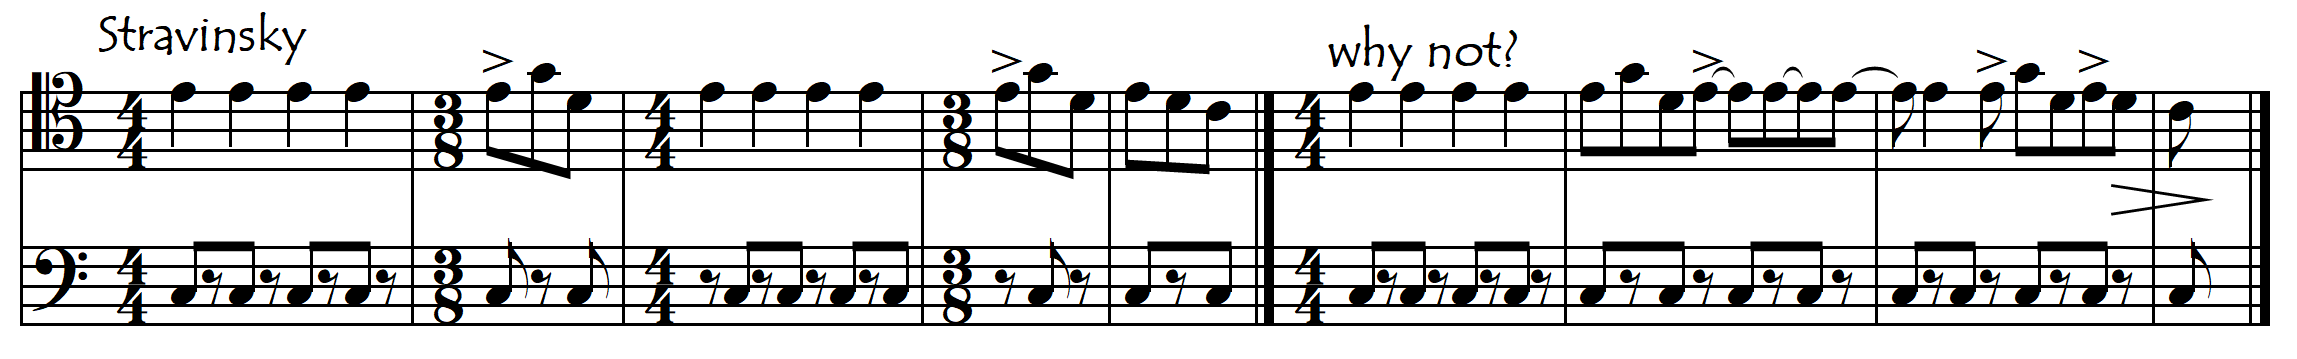 stravinsky notation shit